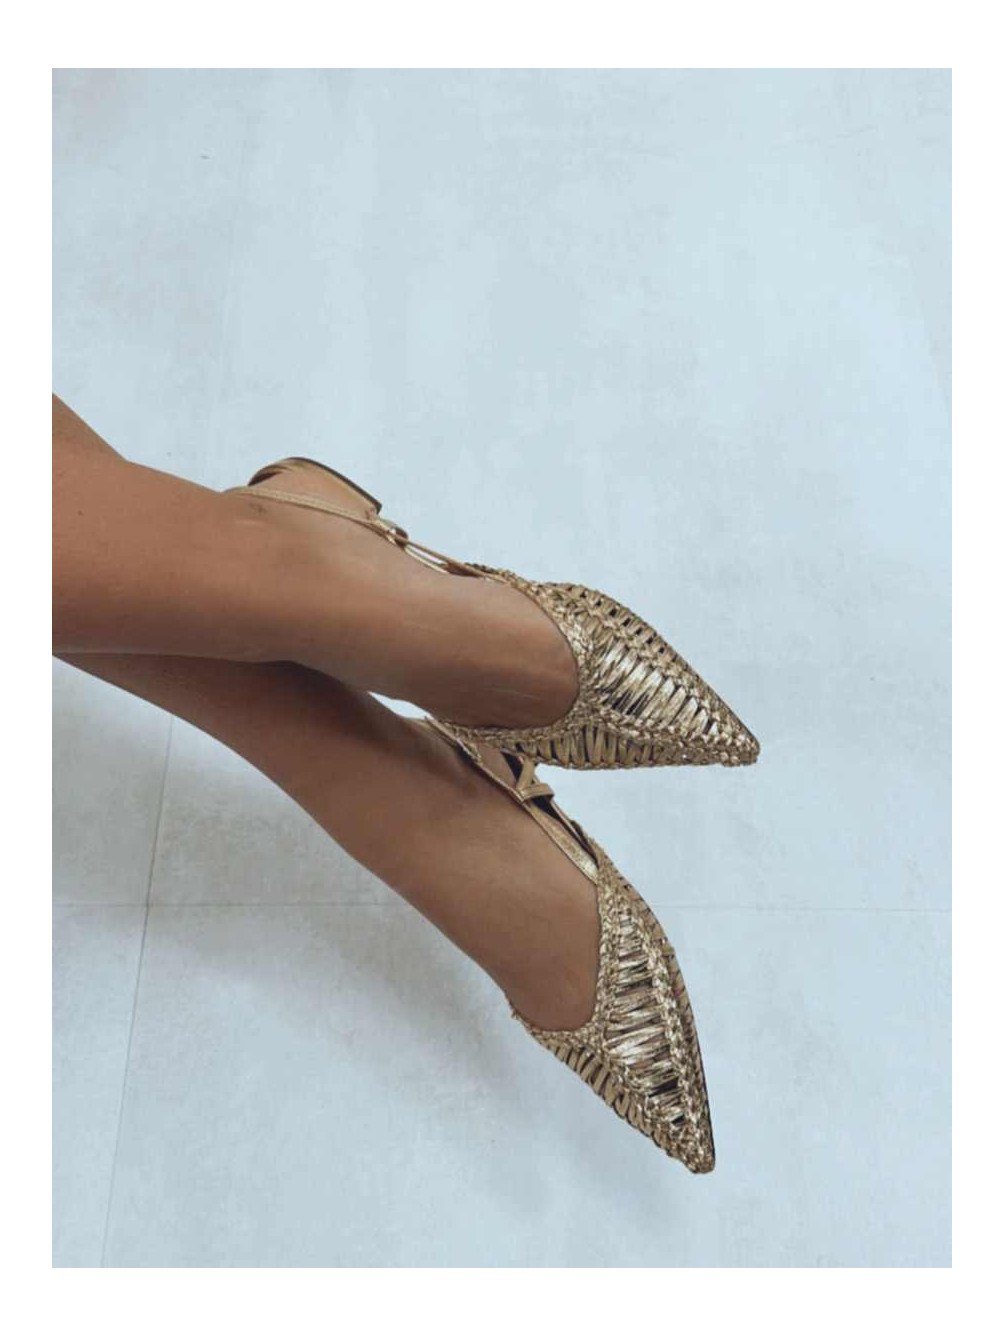 Sandalias doradas, con puntera y destalonadas, zapatos bajos baratos, Mariquita Trasquilá